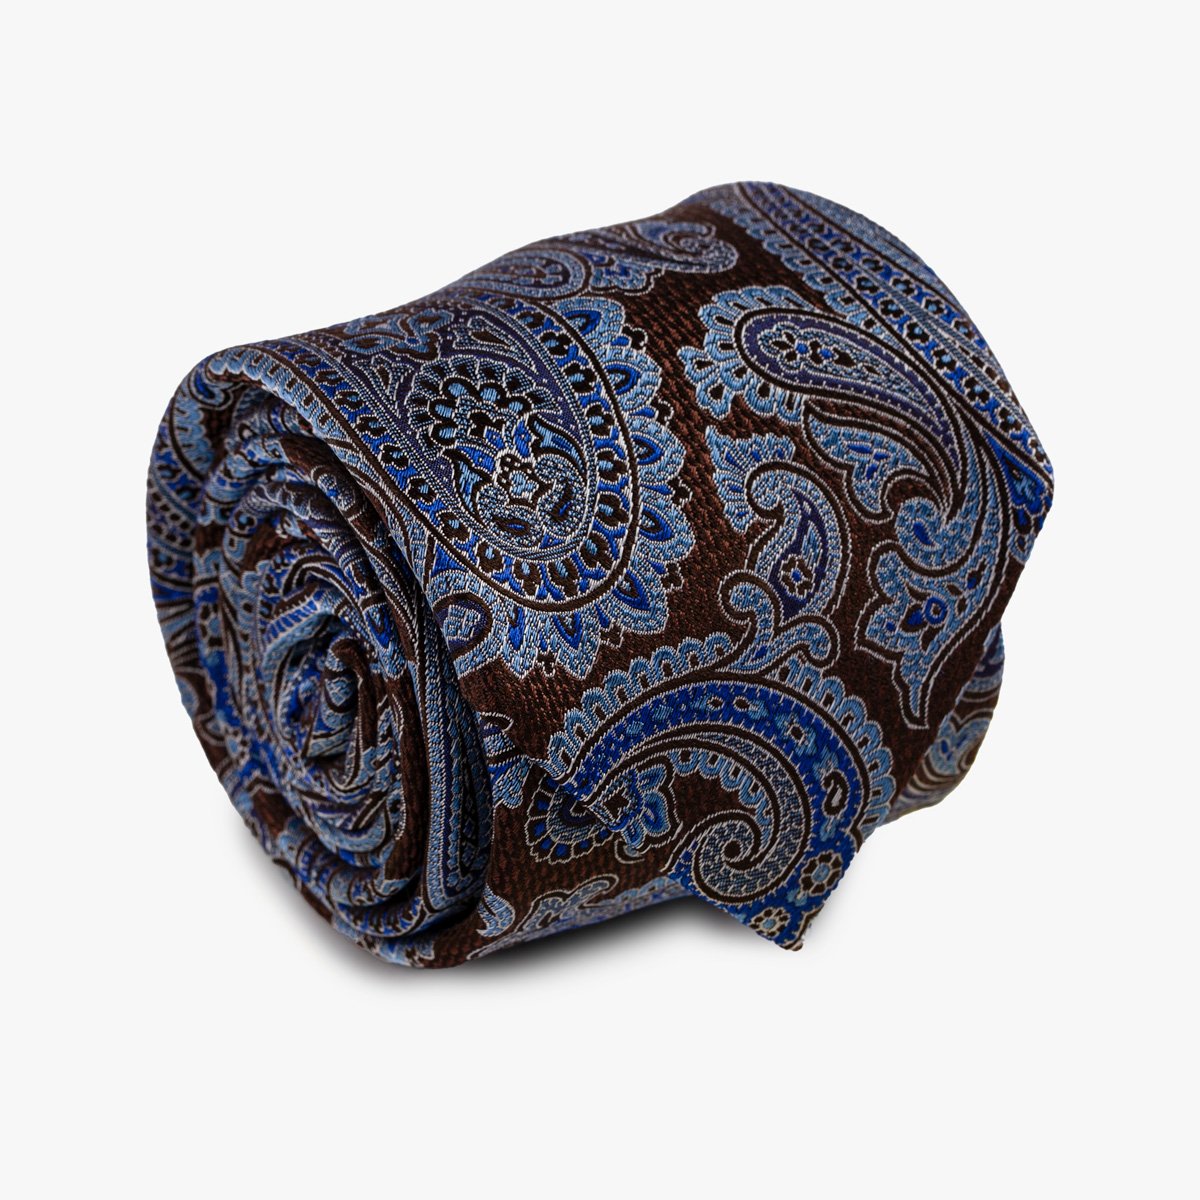 Aufgerollte Krawatte mit Paisley-Muster in braun blau